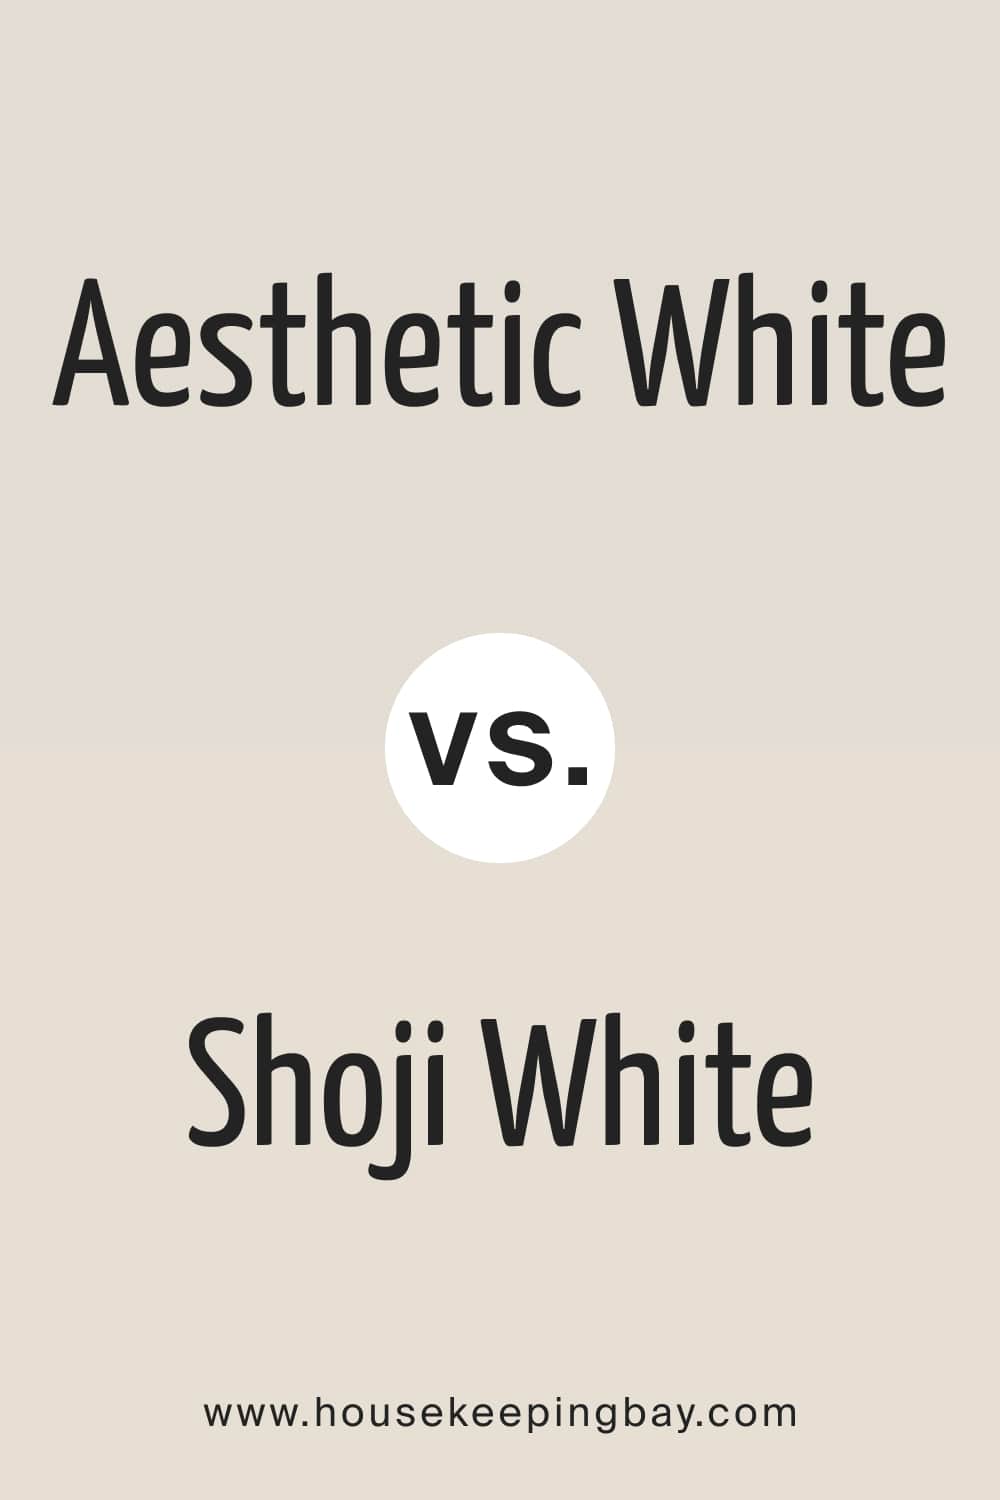 Aesthetic White vs. Shoji White